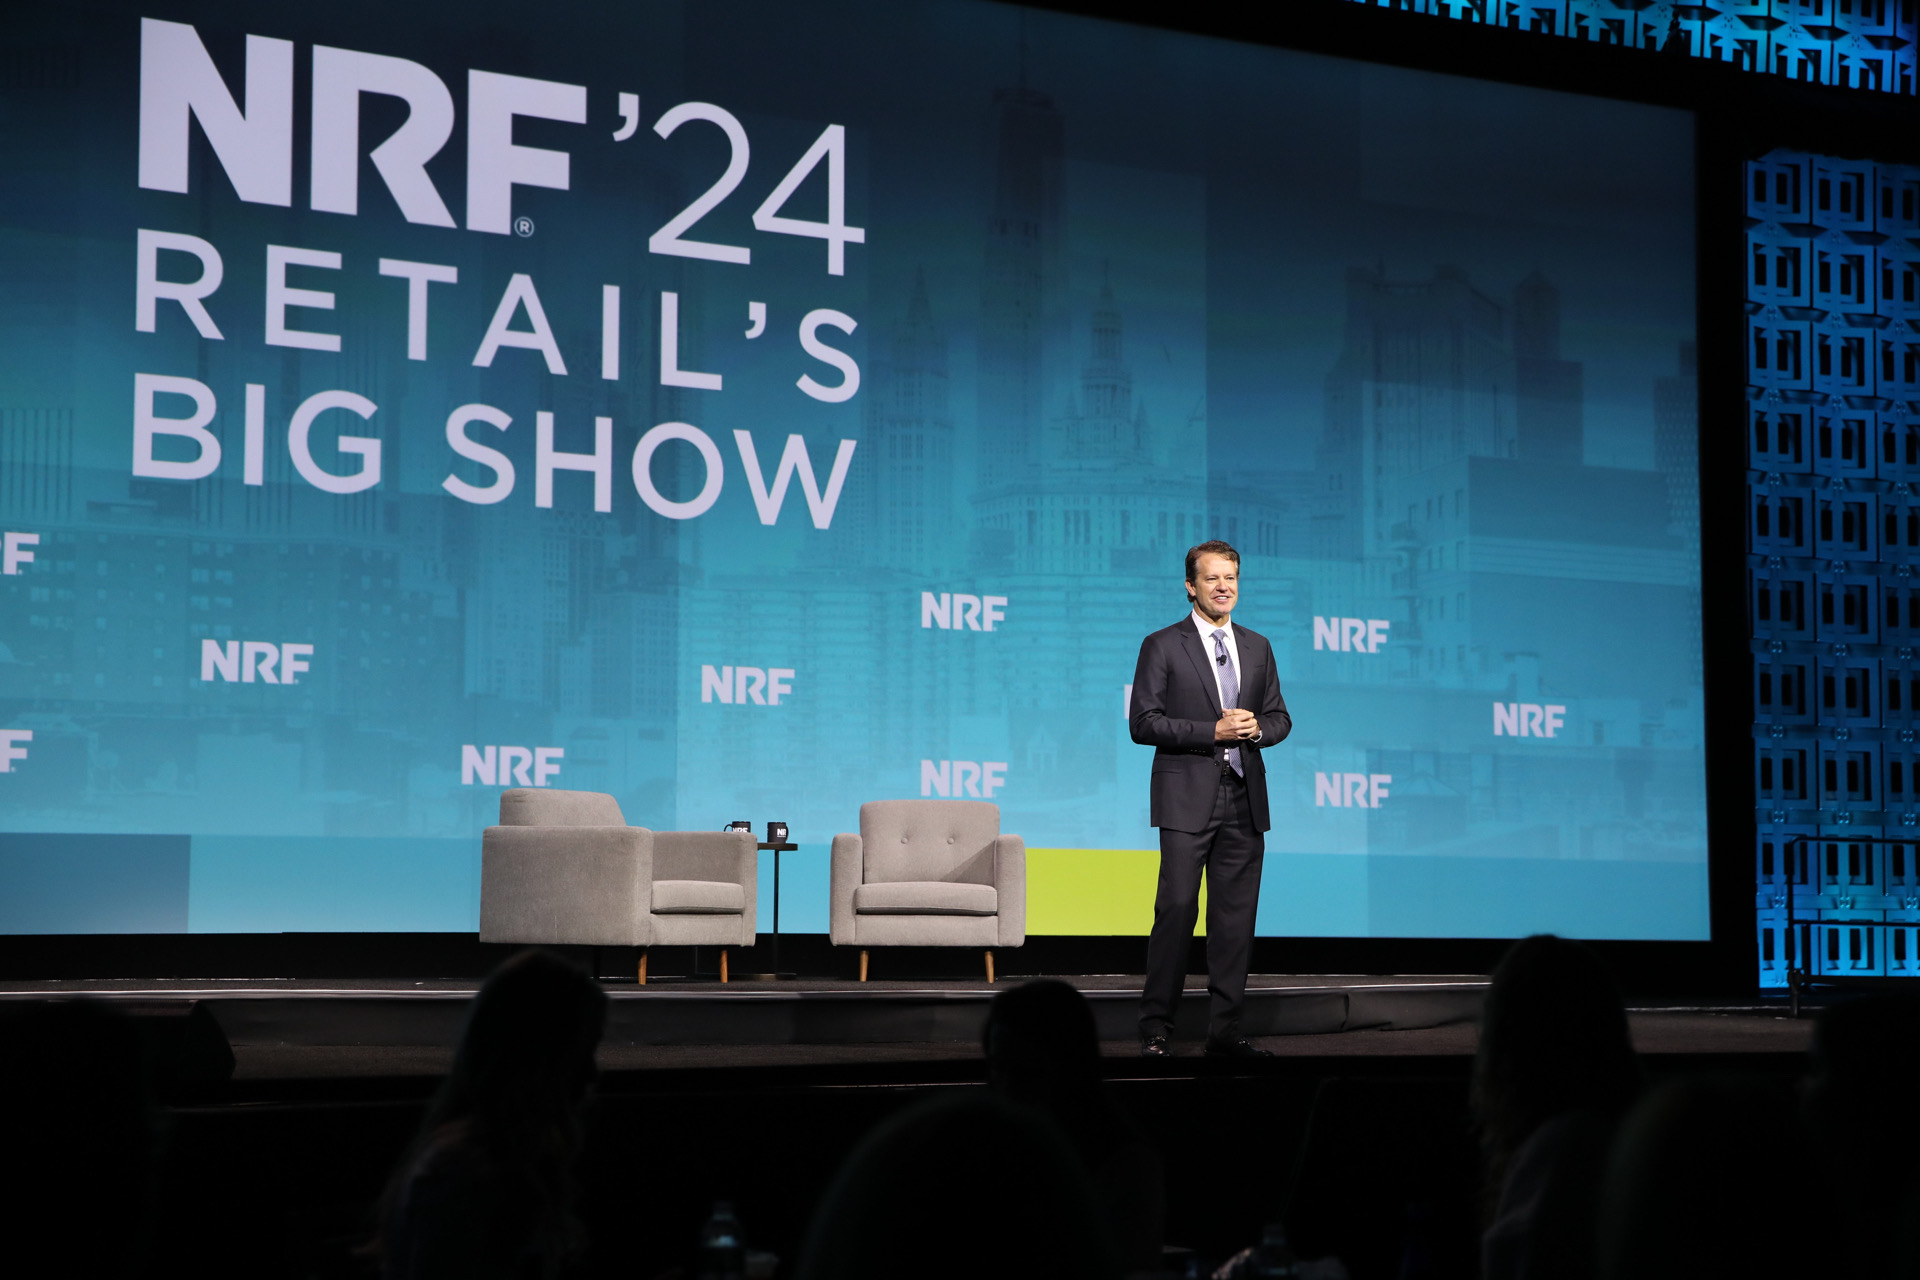 Lições da NRF 2024: Retail’s Big Show para seu varejo